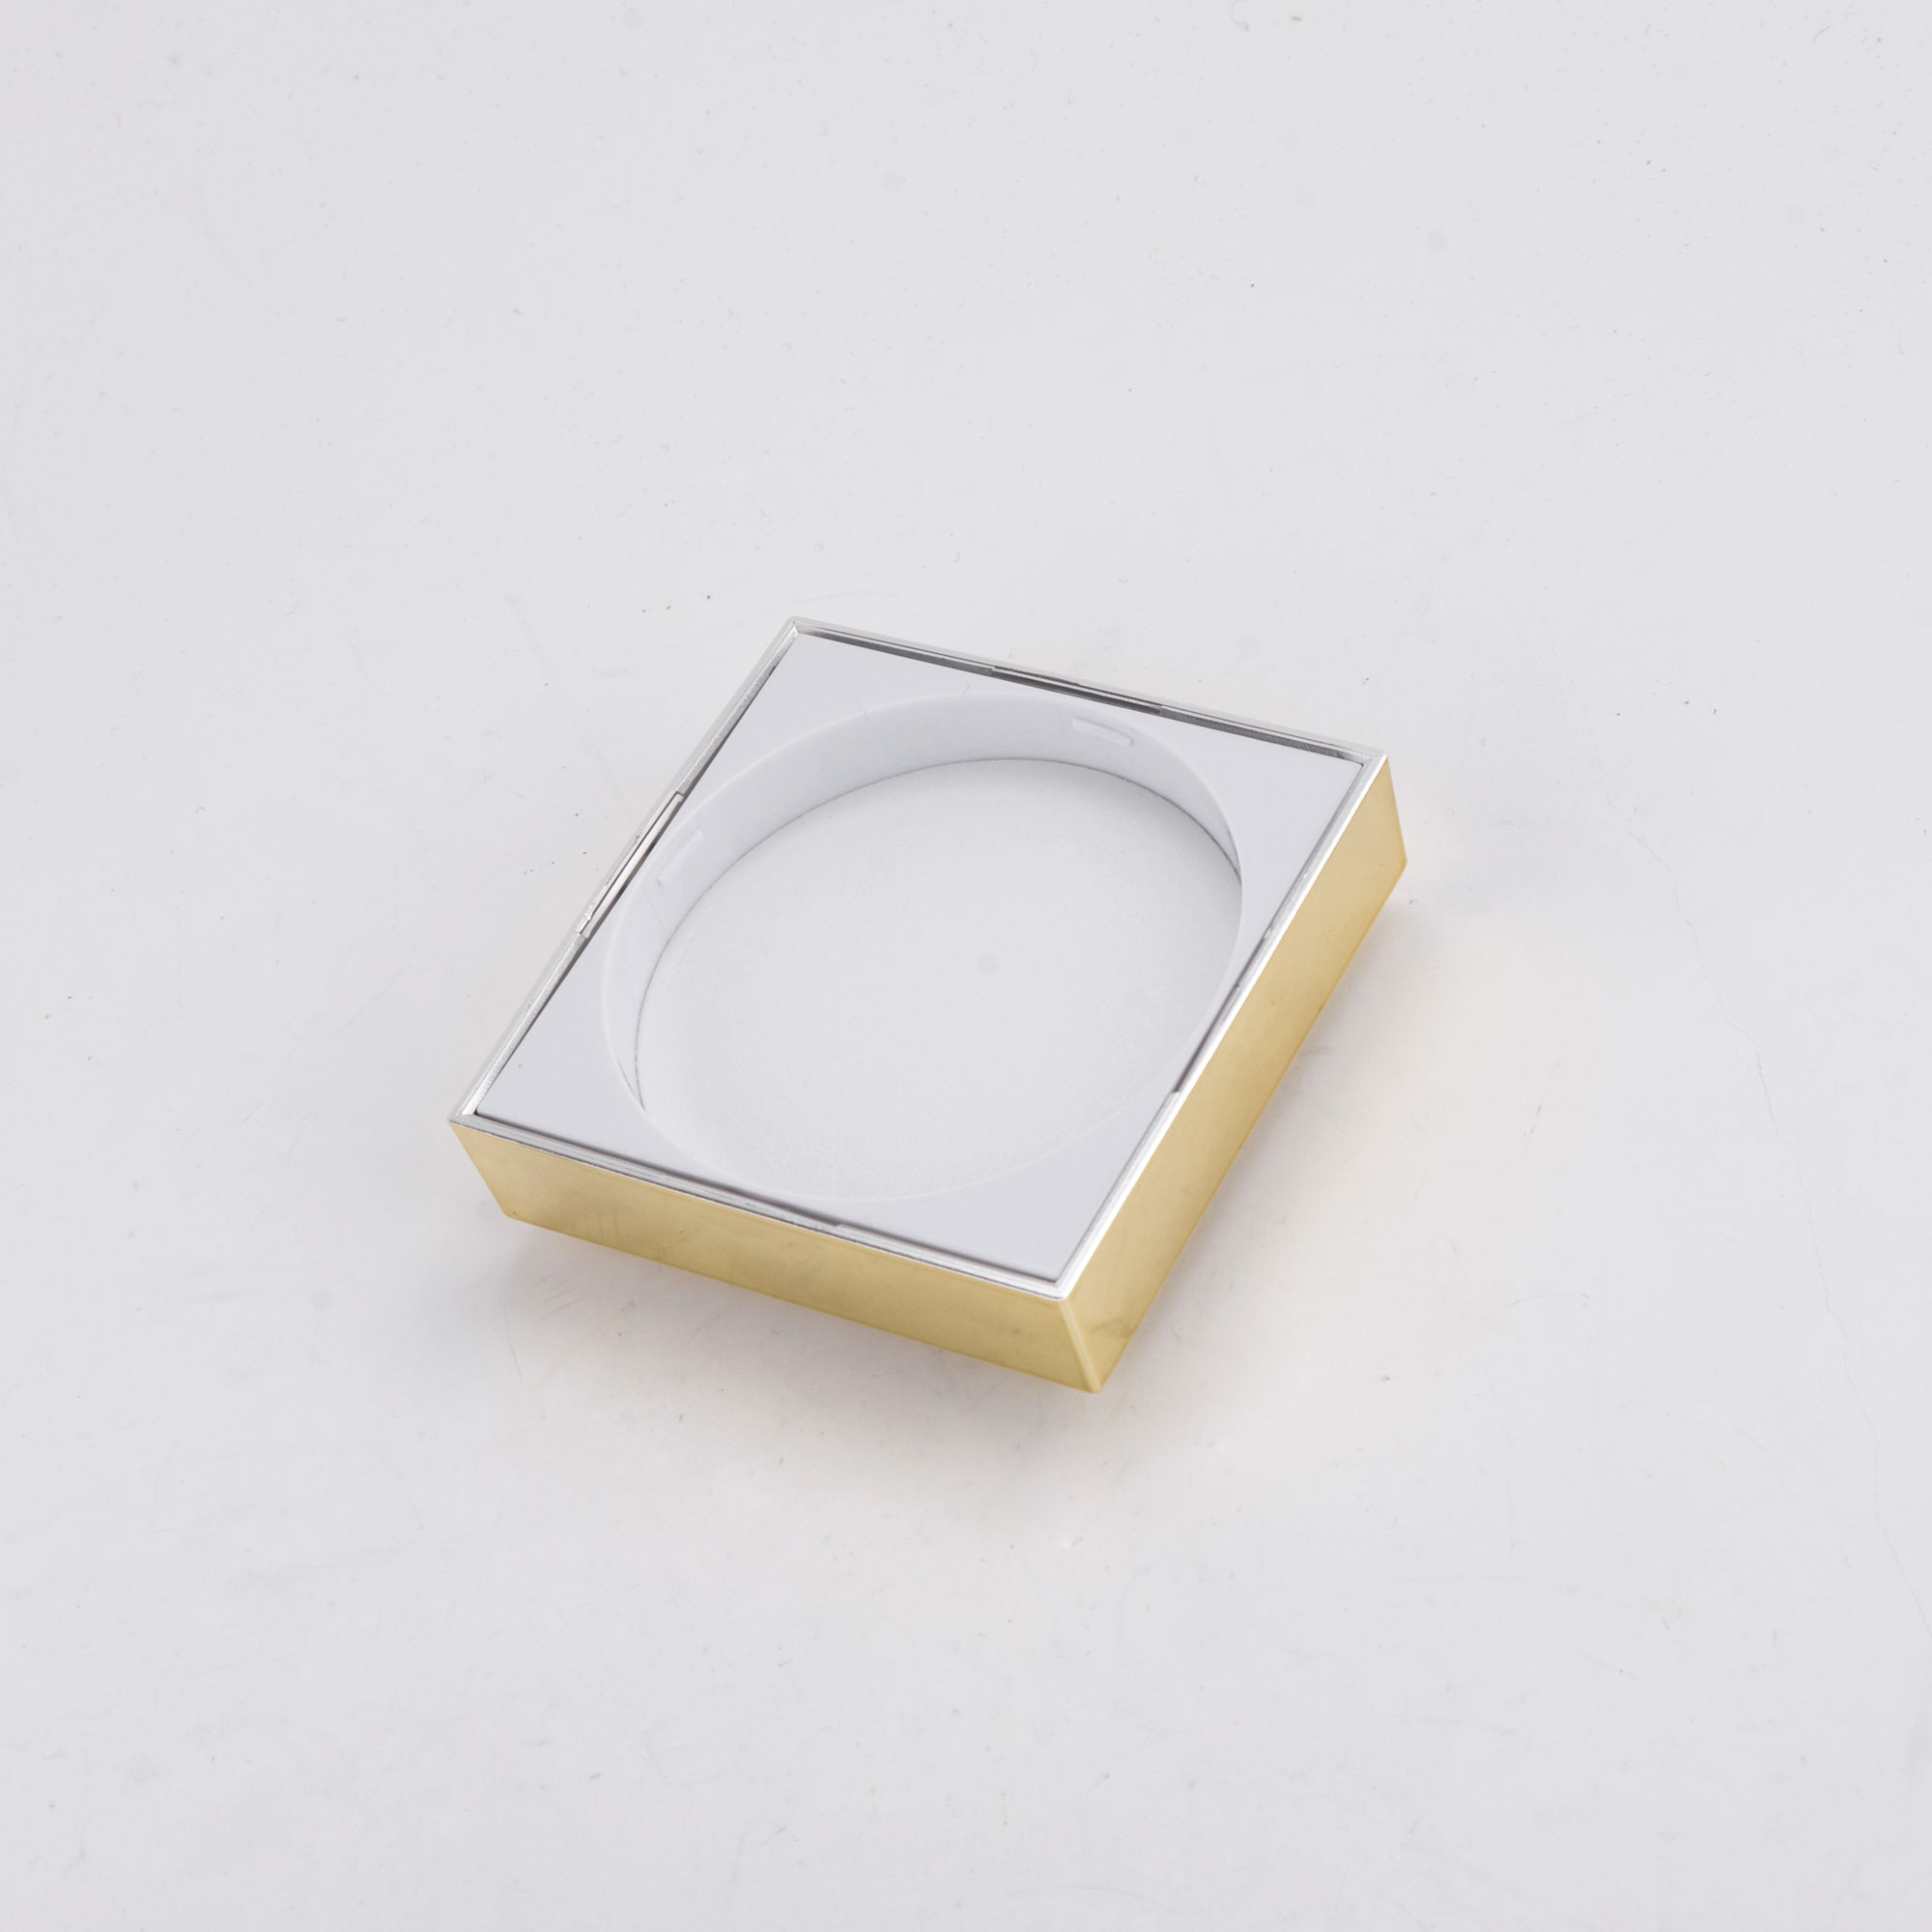 50g Gold Cap Transparent Body Square Cosmetic Cream Jar